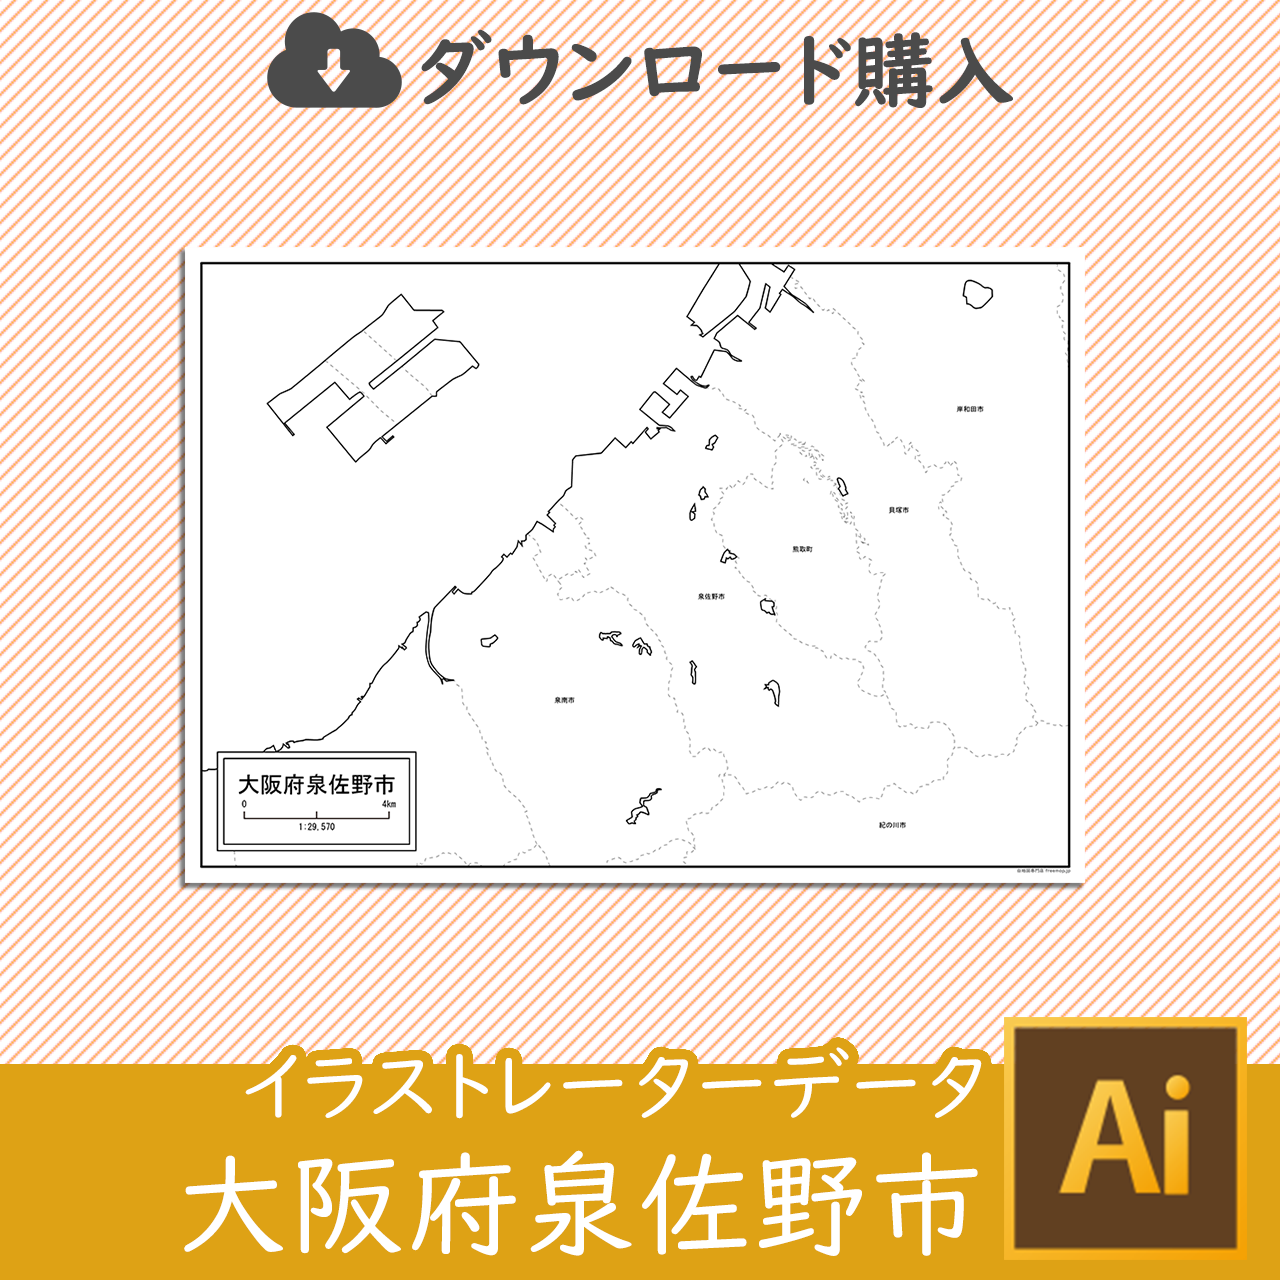 泉佐野市のaiデータのサムネイル画像